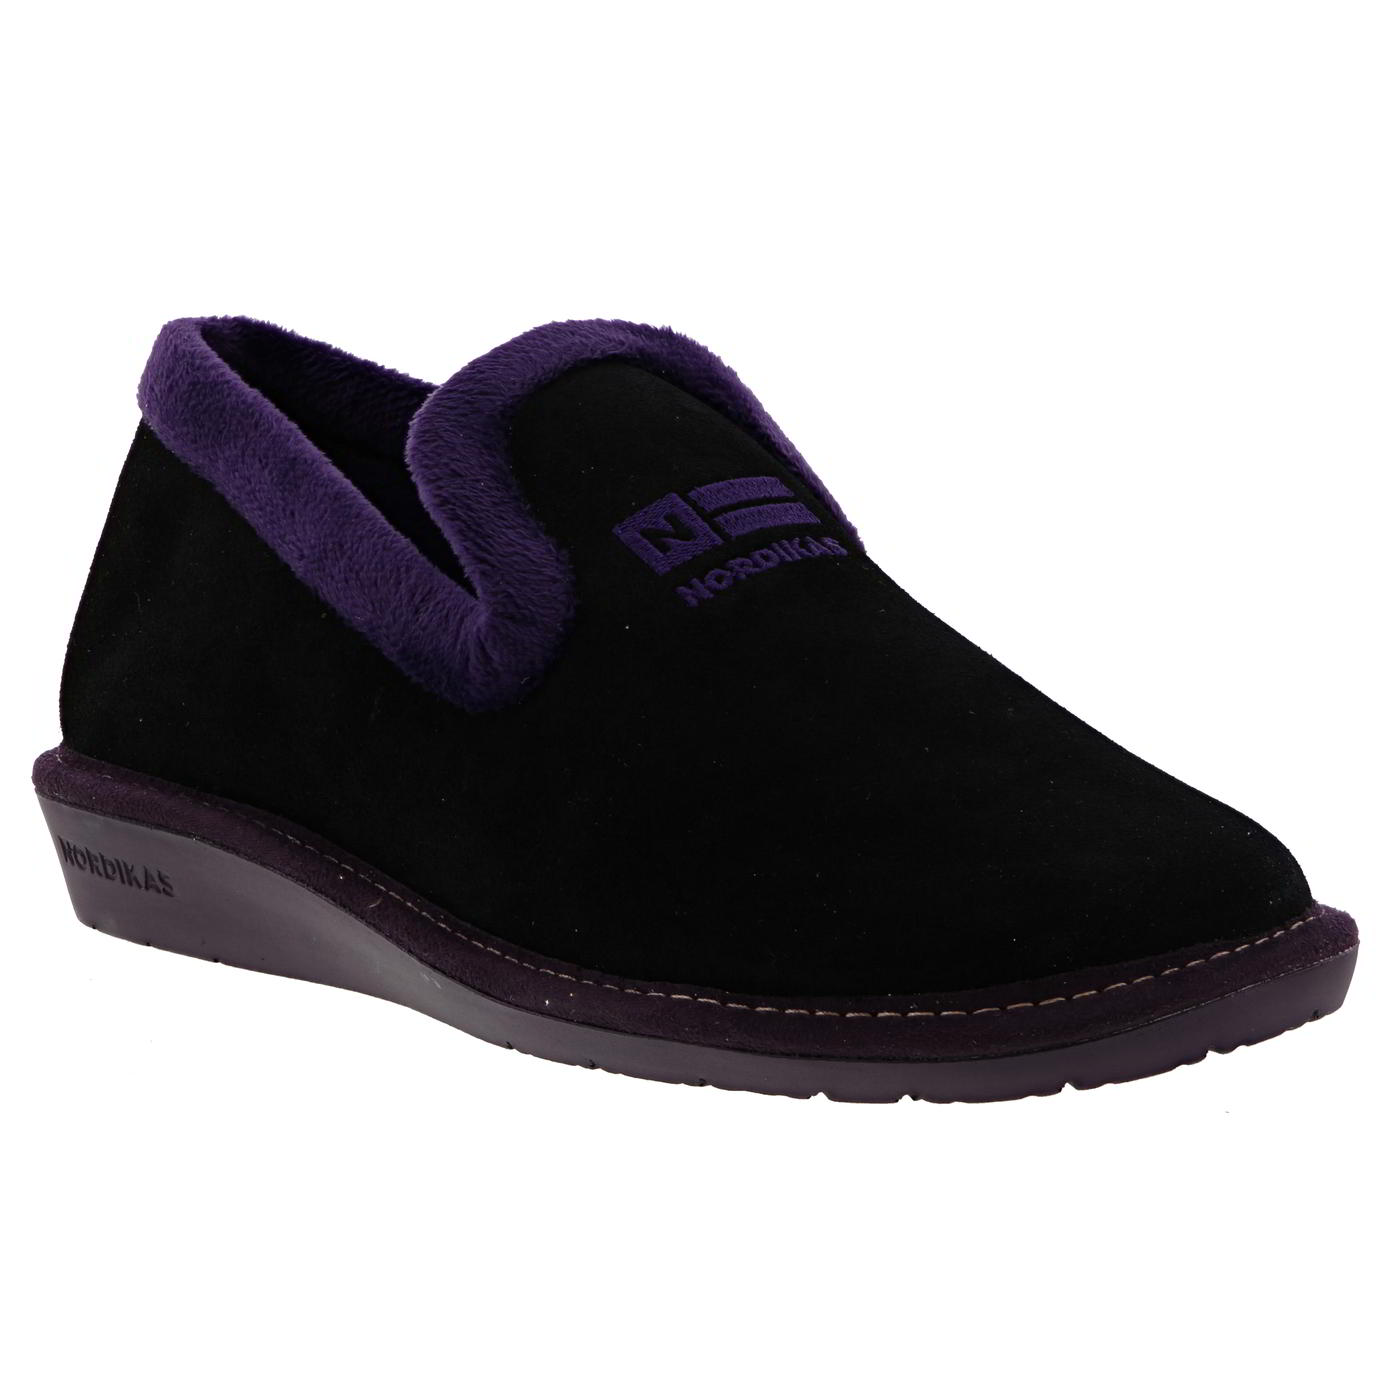 nordikas womens nicola 305 outdoor indoor sole wedge slippers  - uk 7